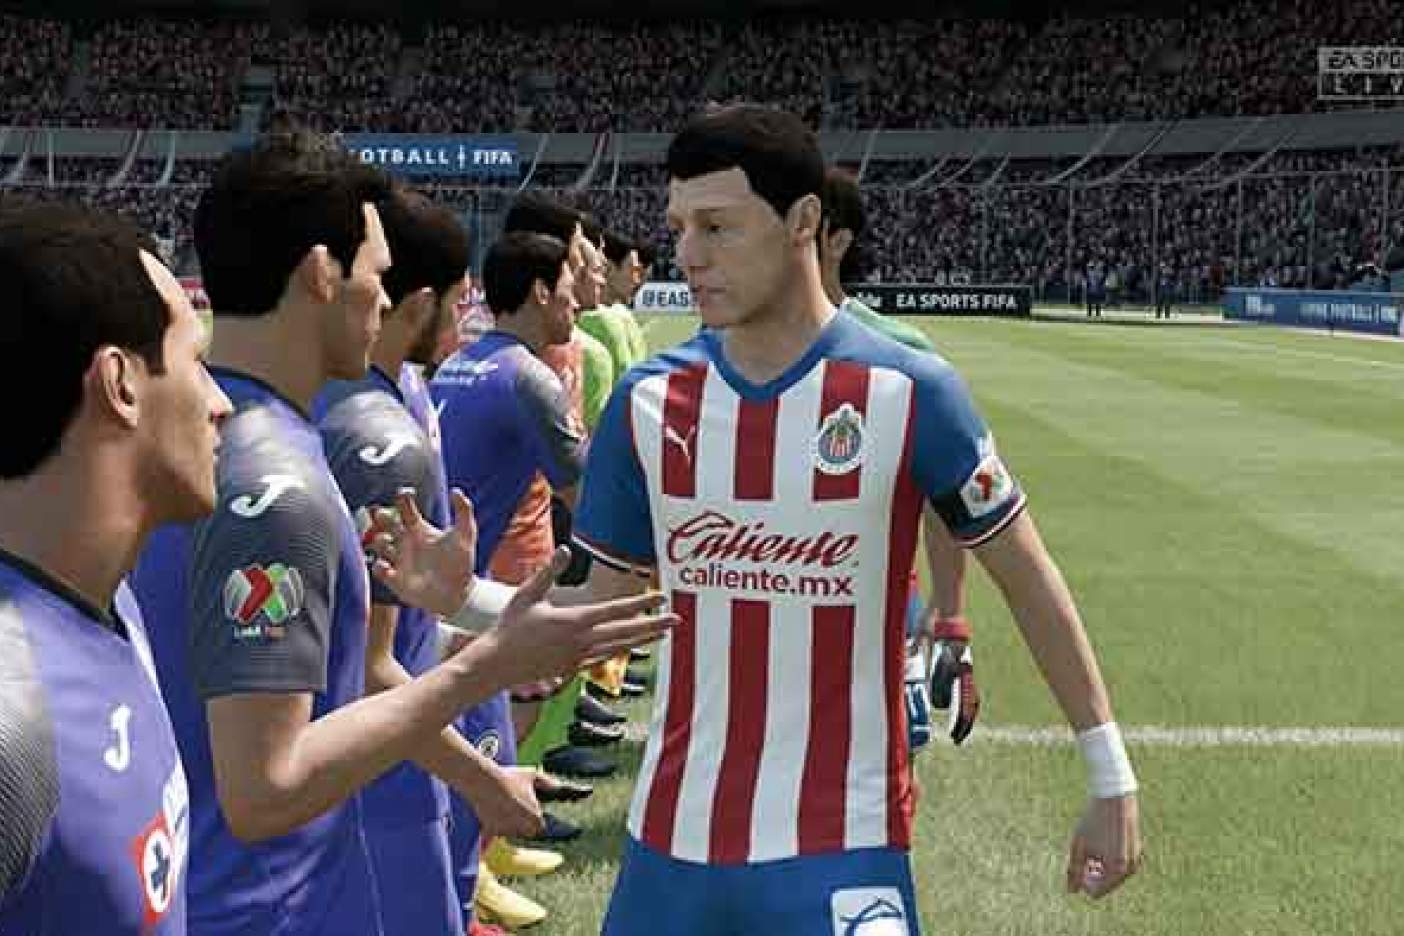 chivas 1 301122 - Chivas y EA SPORTS hacen alianza